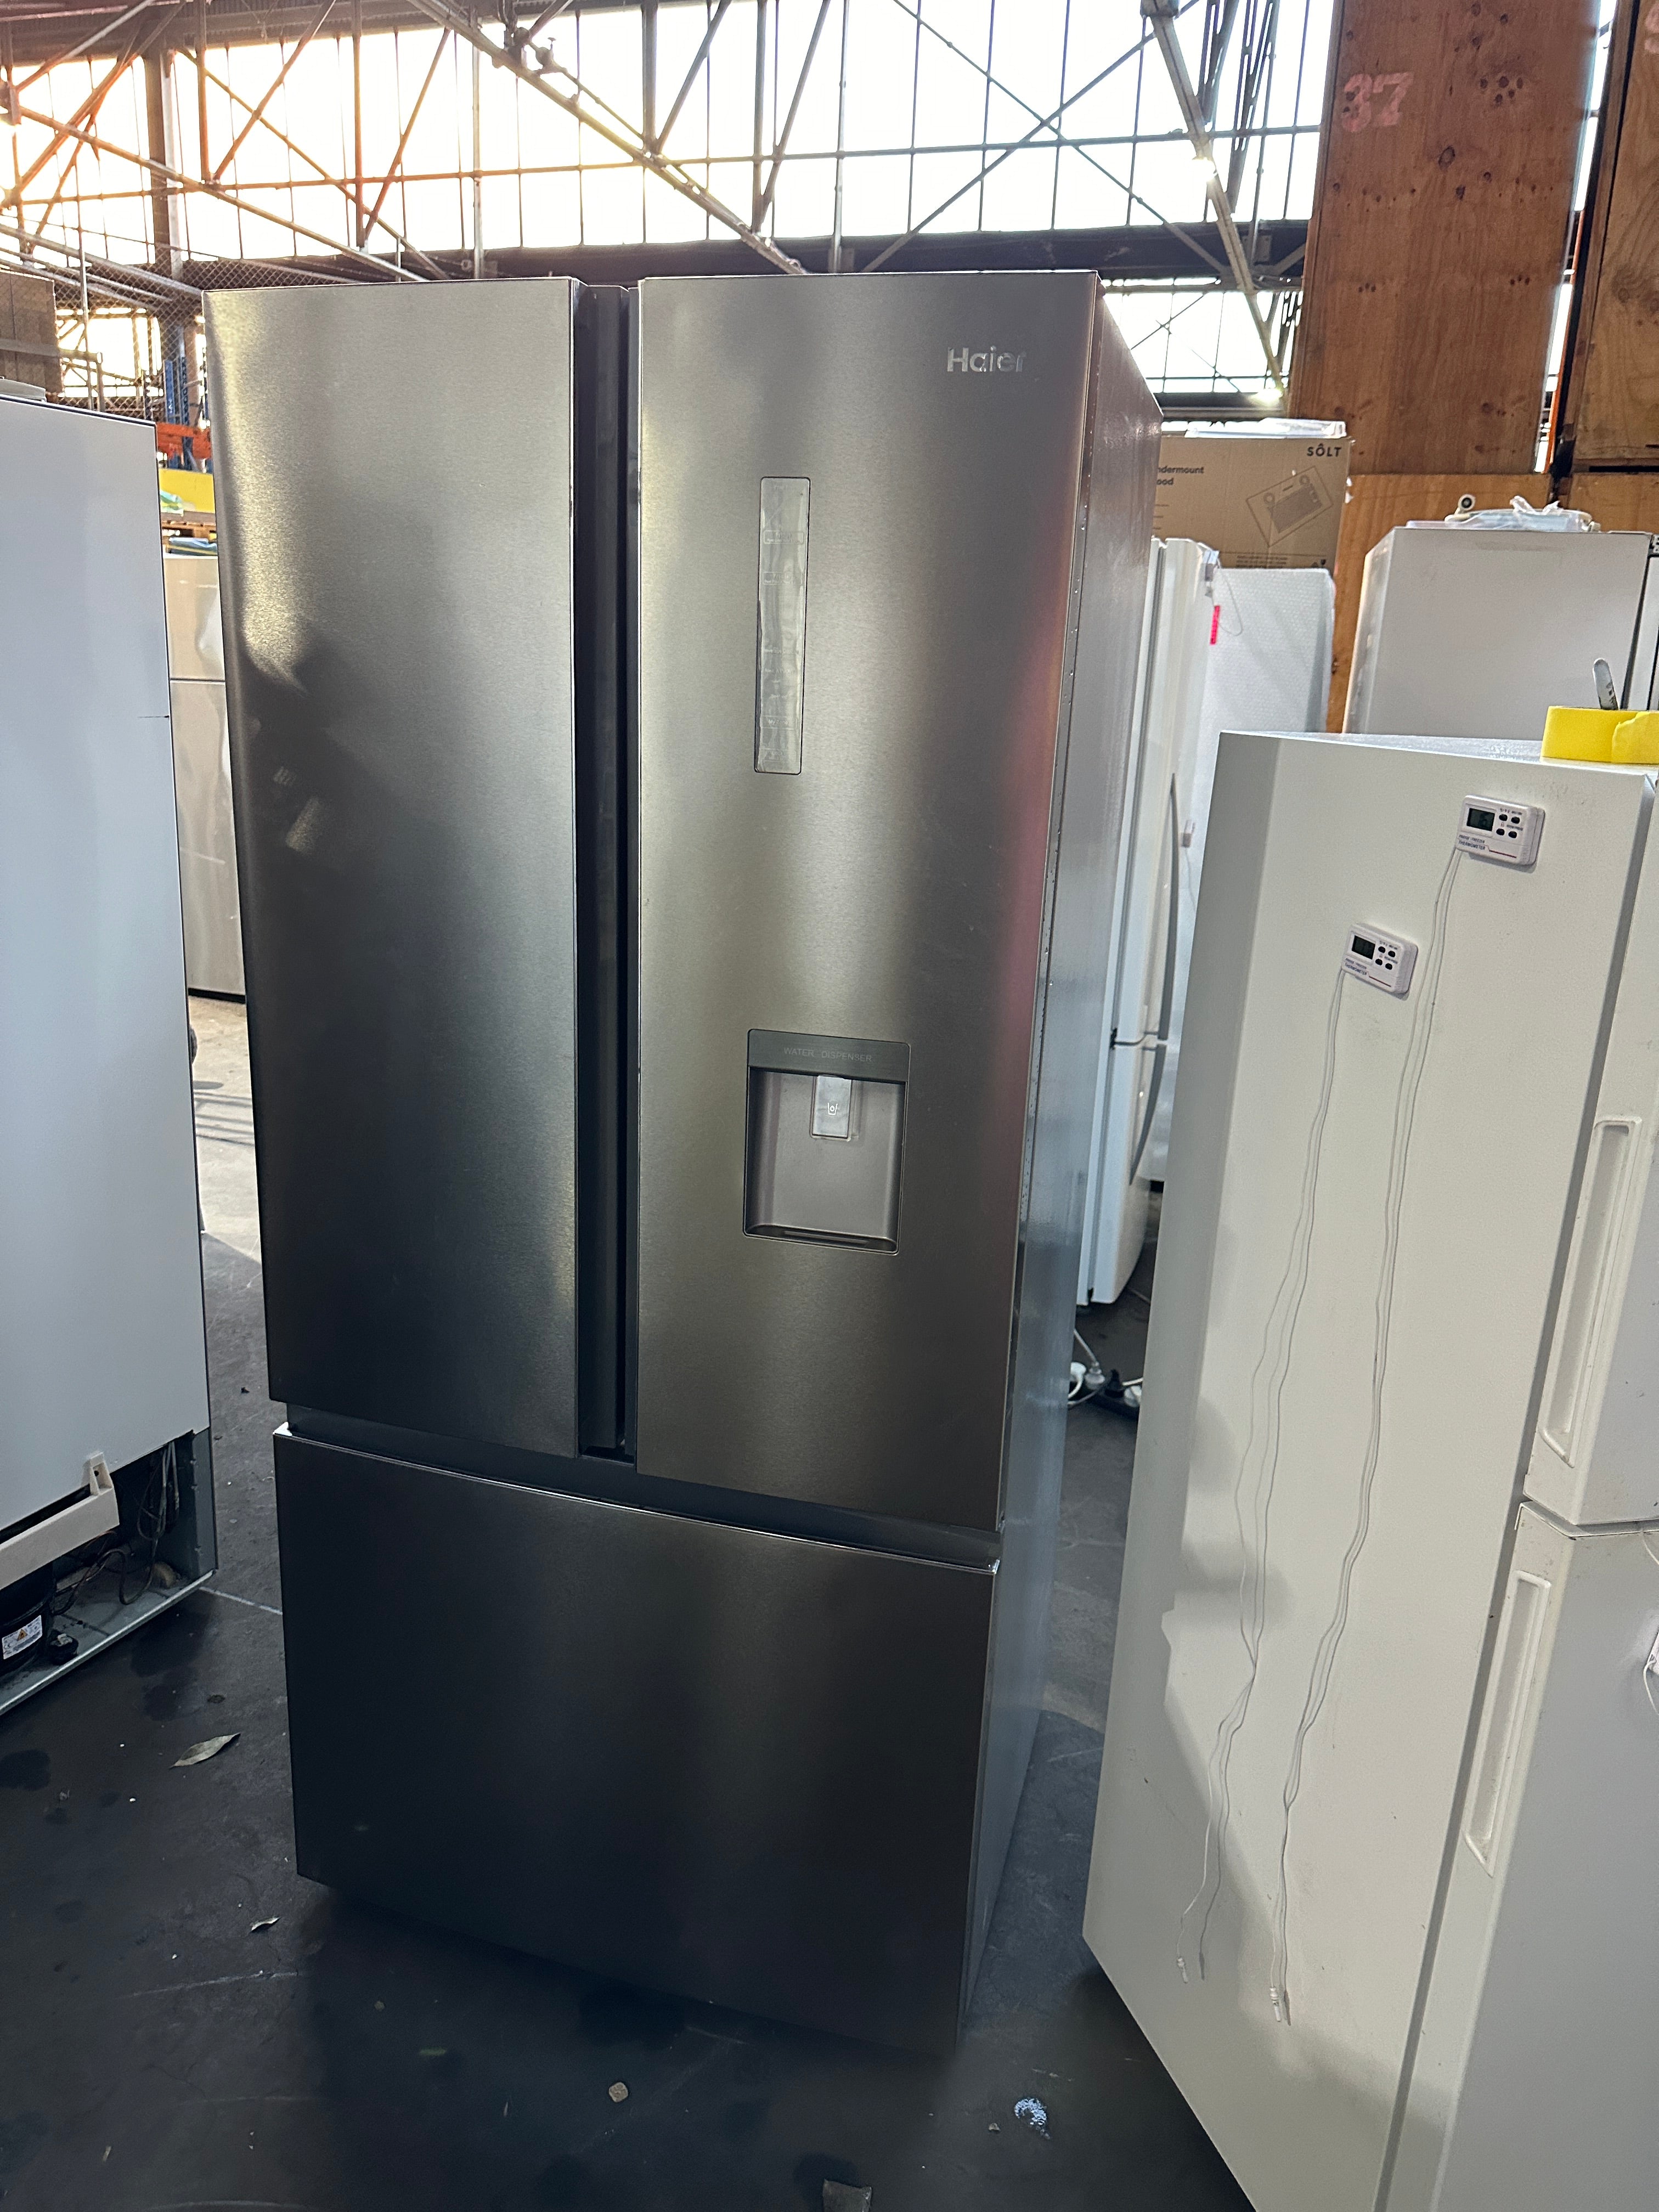 HRF520FS Haier 492 L French Door Refrigerator